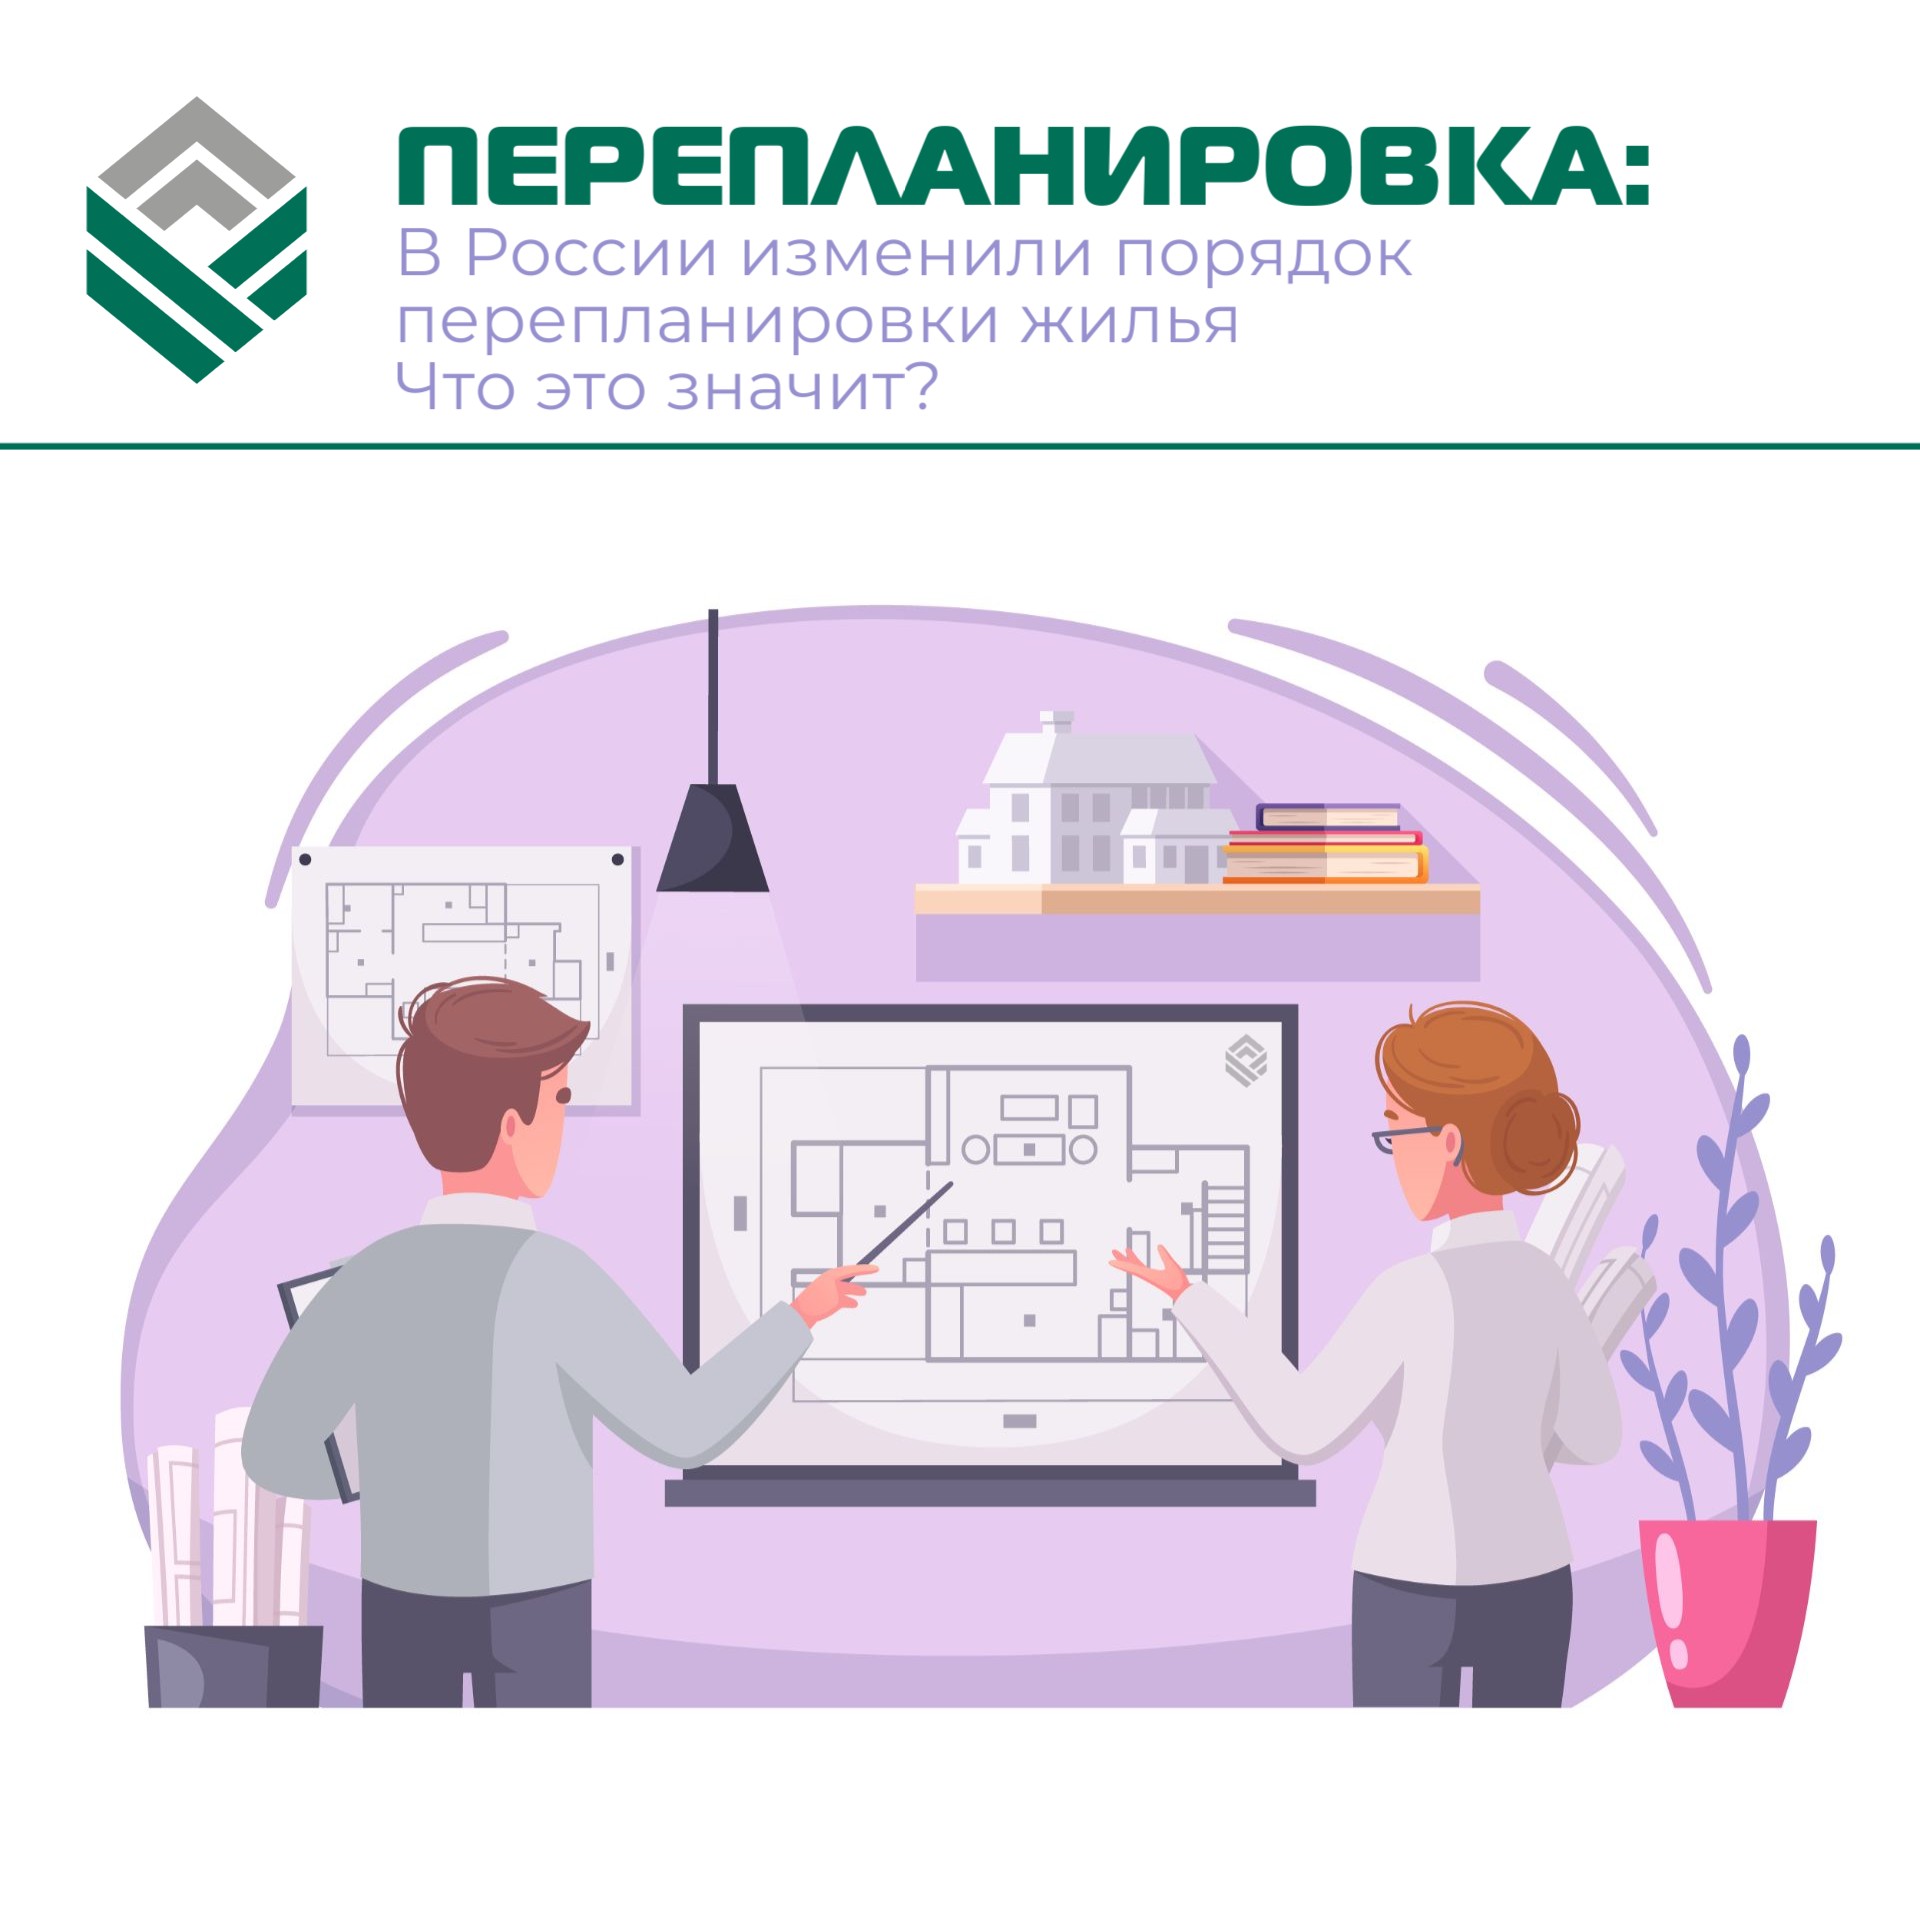 В России изменили порядок перепланировки жилья. Что это значит?